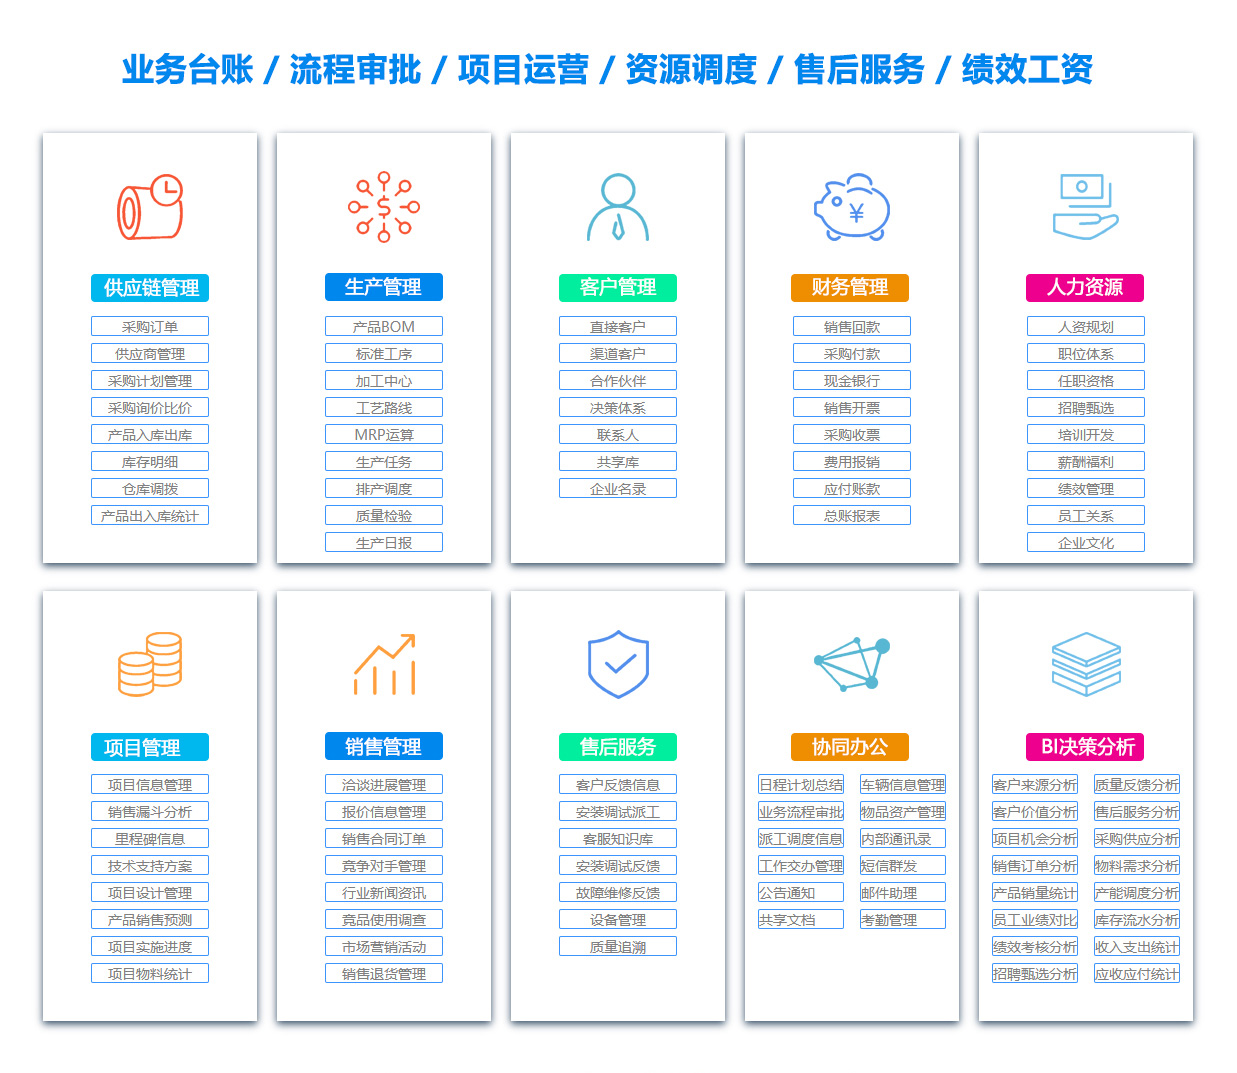 三明SCM:供应链管理系统